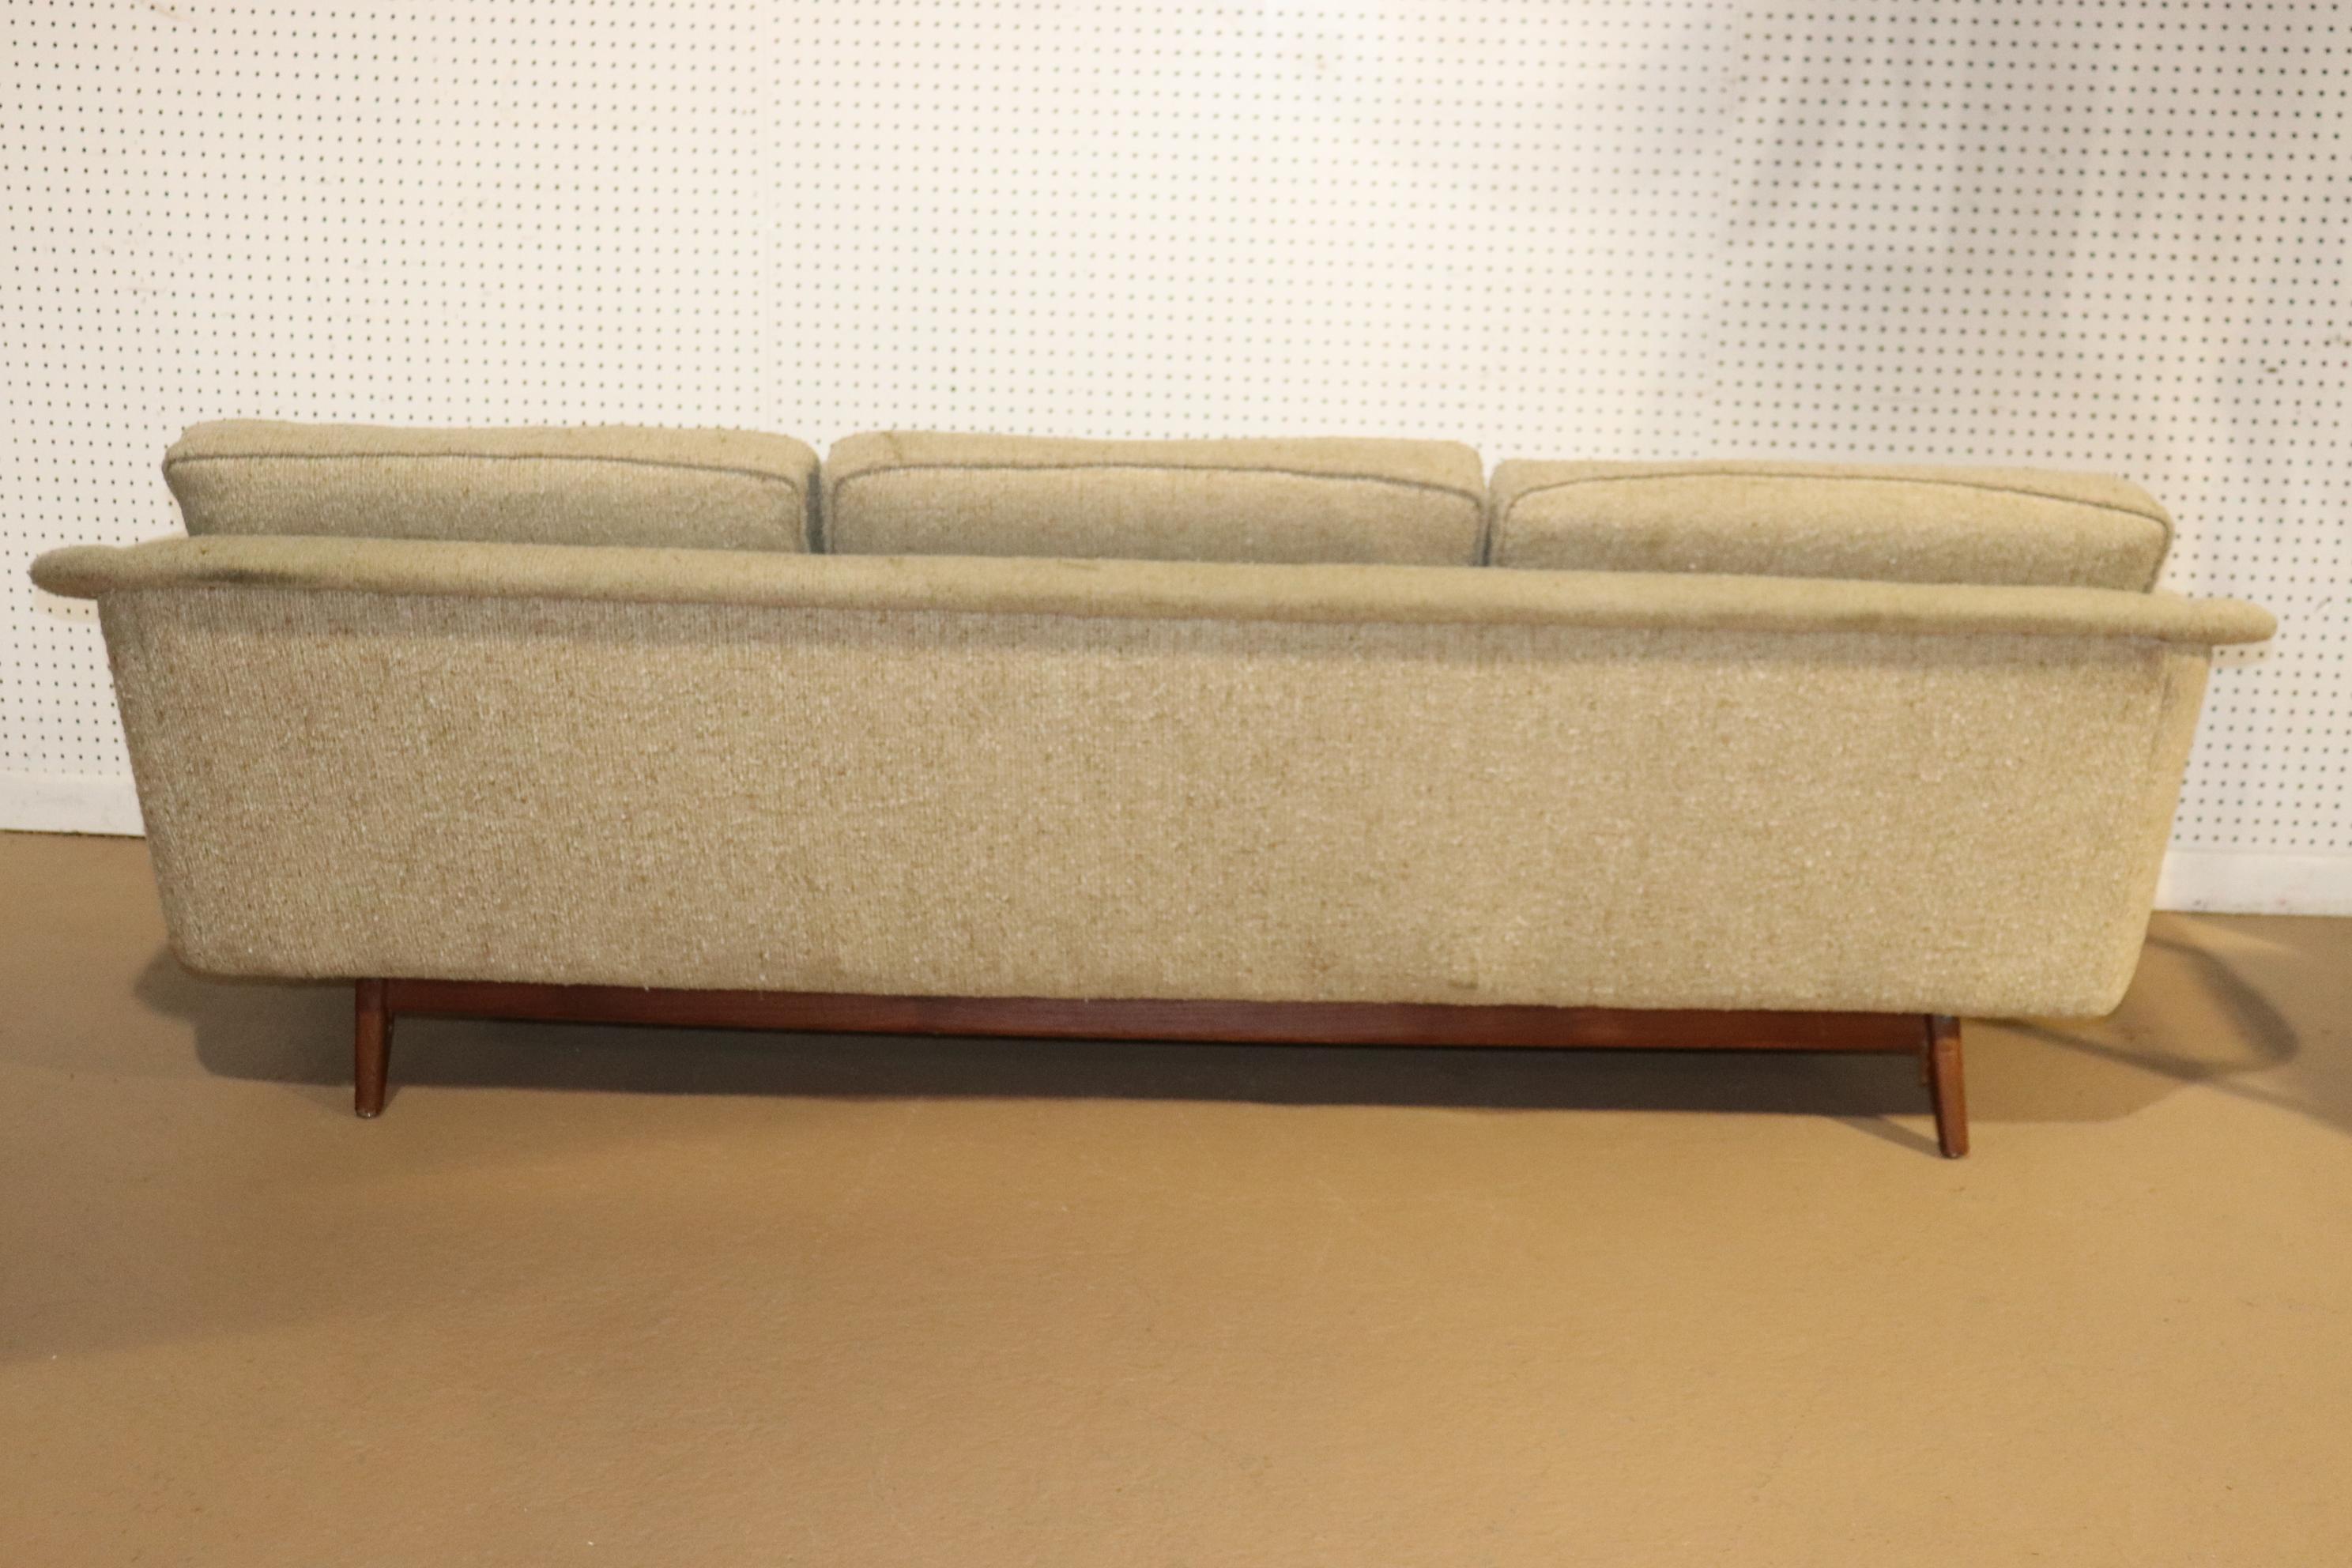 Long canapé du milieu du siècle de Folke Ohlsson pour Dux avec trois larges sièges, posé sur une base en bois de teck. Le design moderne et attrayant se caractérise par un dossier incliné qui descend jusqu'aux accoudoirs.
Veuillez confirmer le lieu